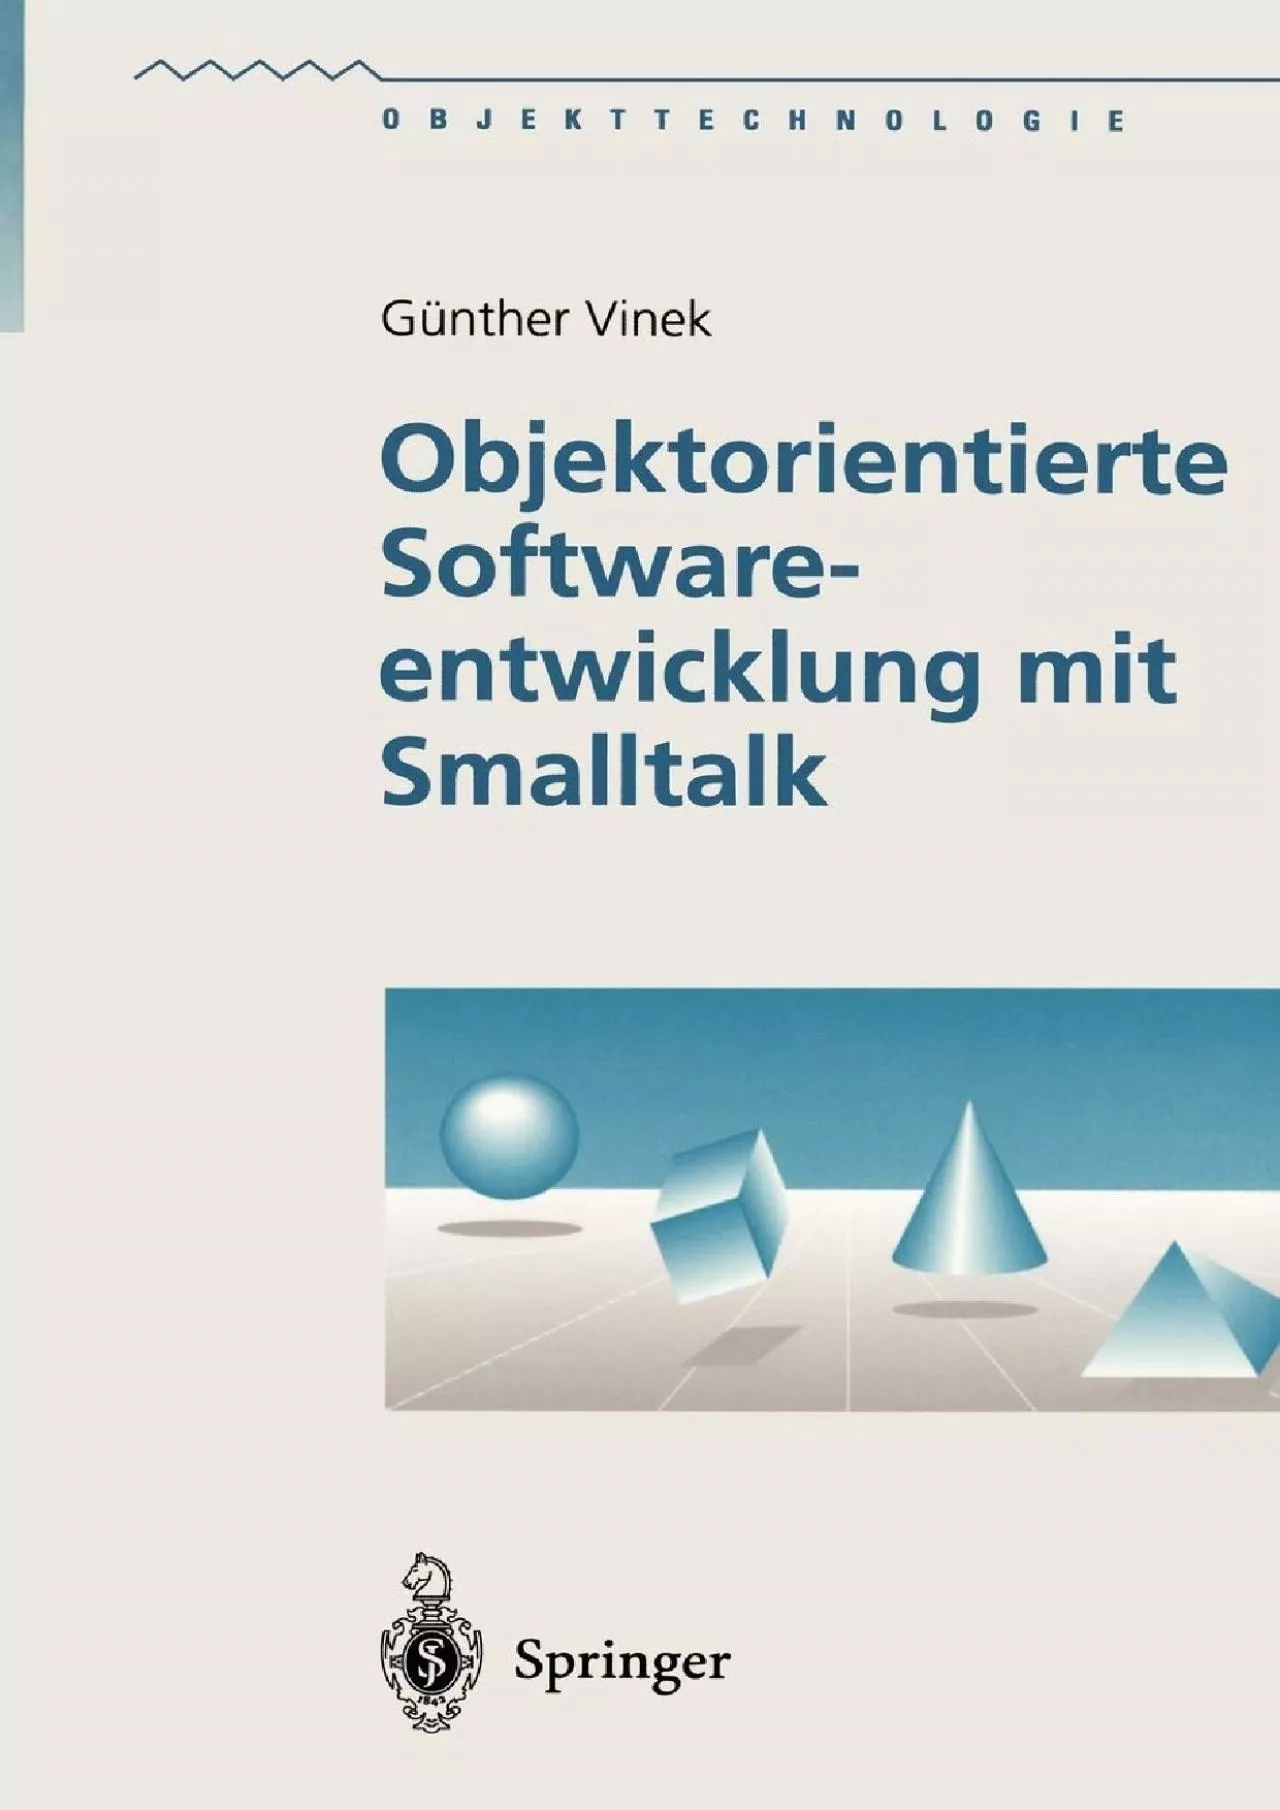 [PDF]-Objektorientierte Softwareentwicklung mit Smalltalk (Objekttechnologie) (German